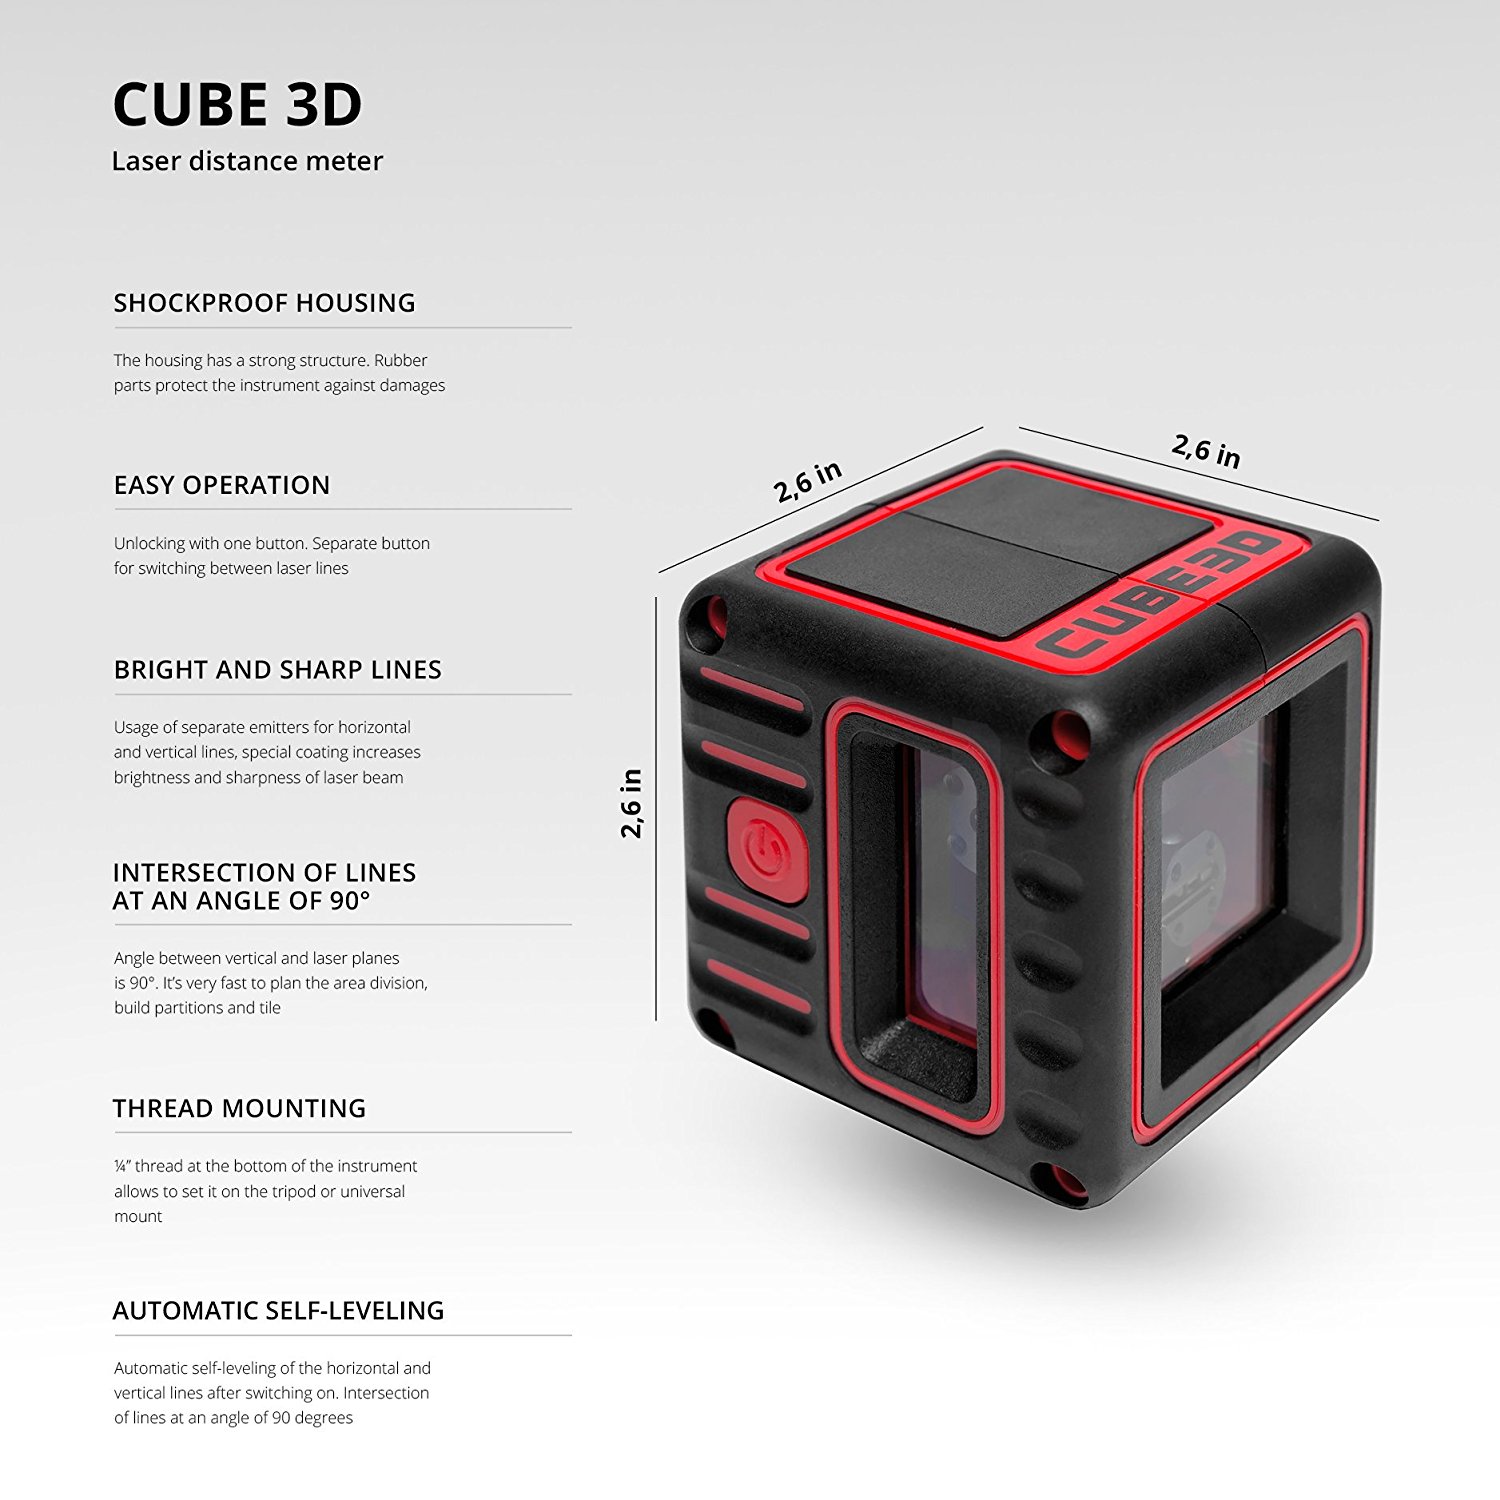 Cube ultimate edition. Нивелир лазерный ada Cube 3d Basic Edition а00382. Cube 3d лазерный уровень. Ada instruments Cube 3d Green professional Edition. Лазерный уровень ada Cube 3d Basic Edition.